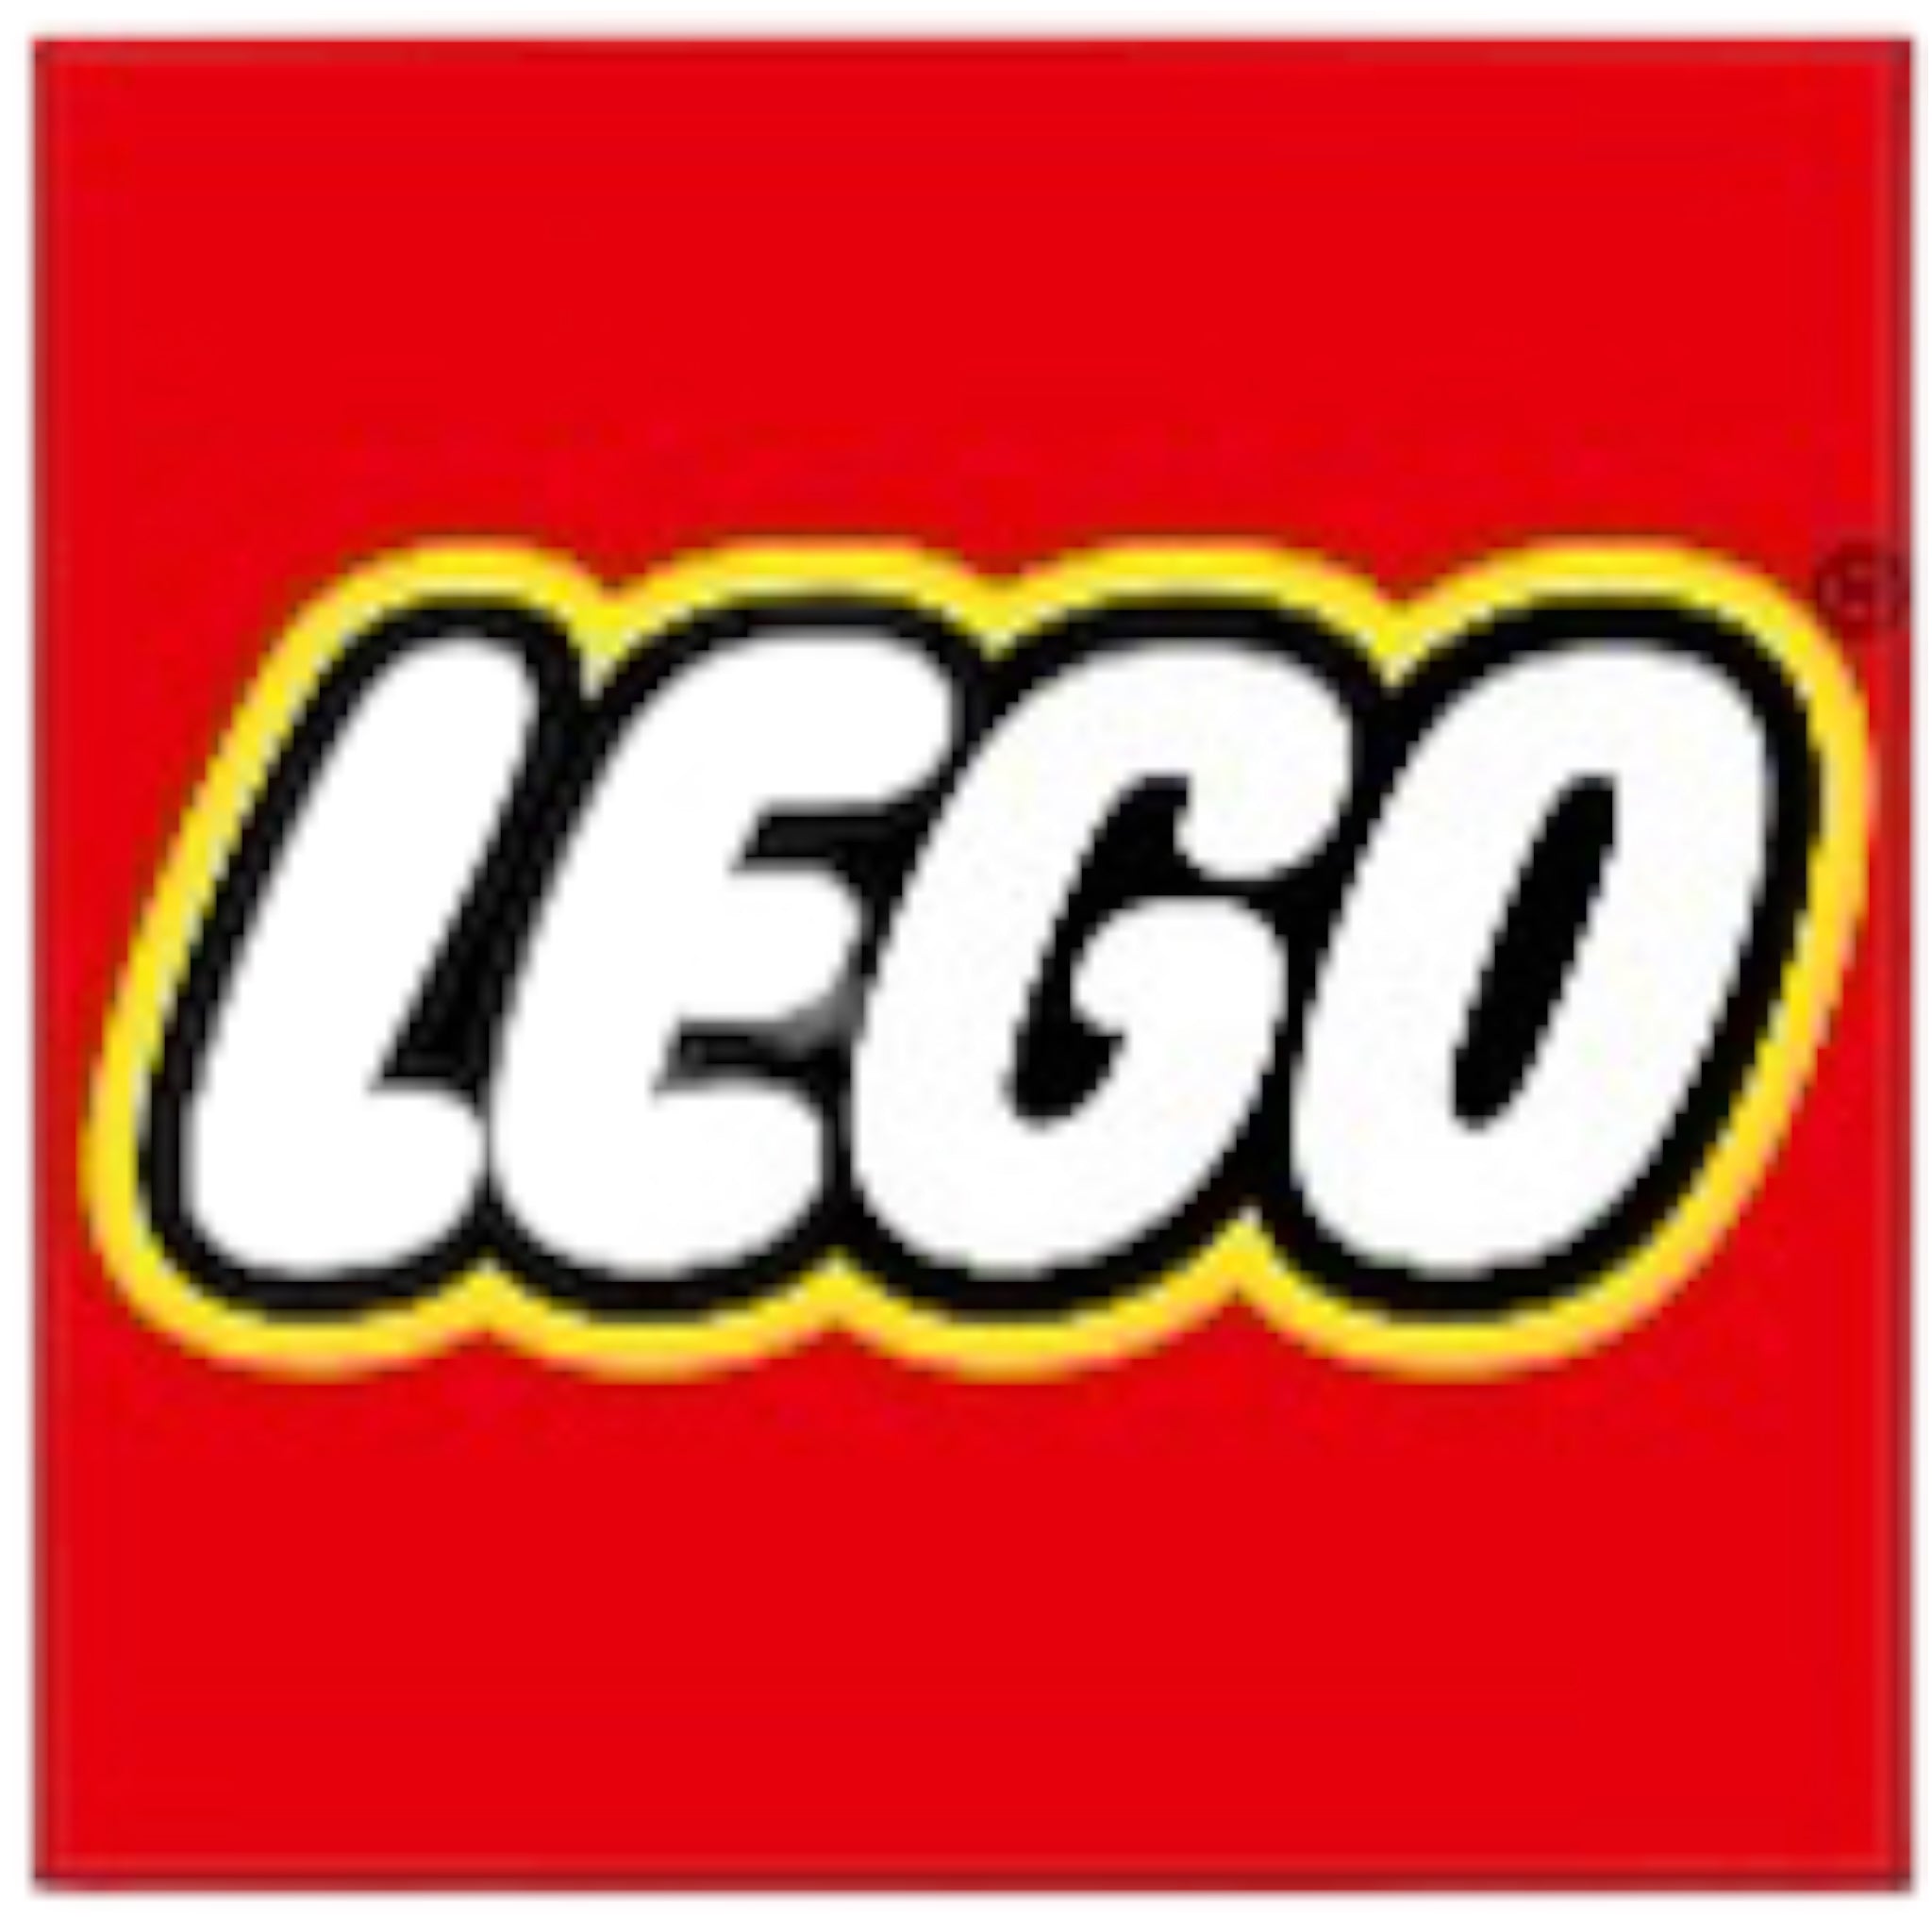 Lego Shop - Figuren, Spielzeug kaufen 